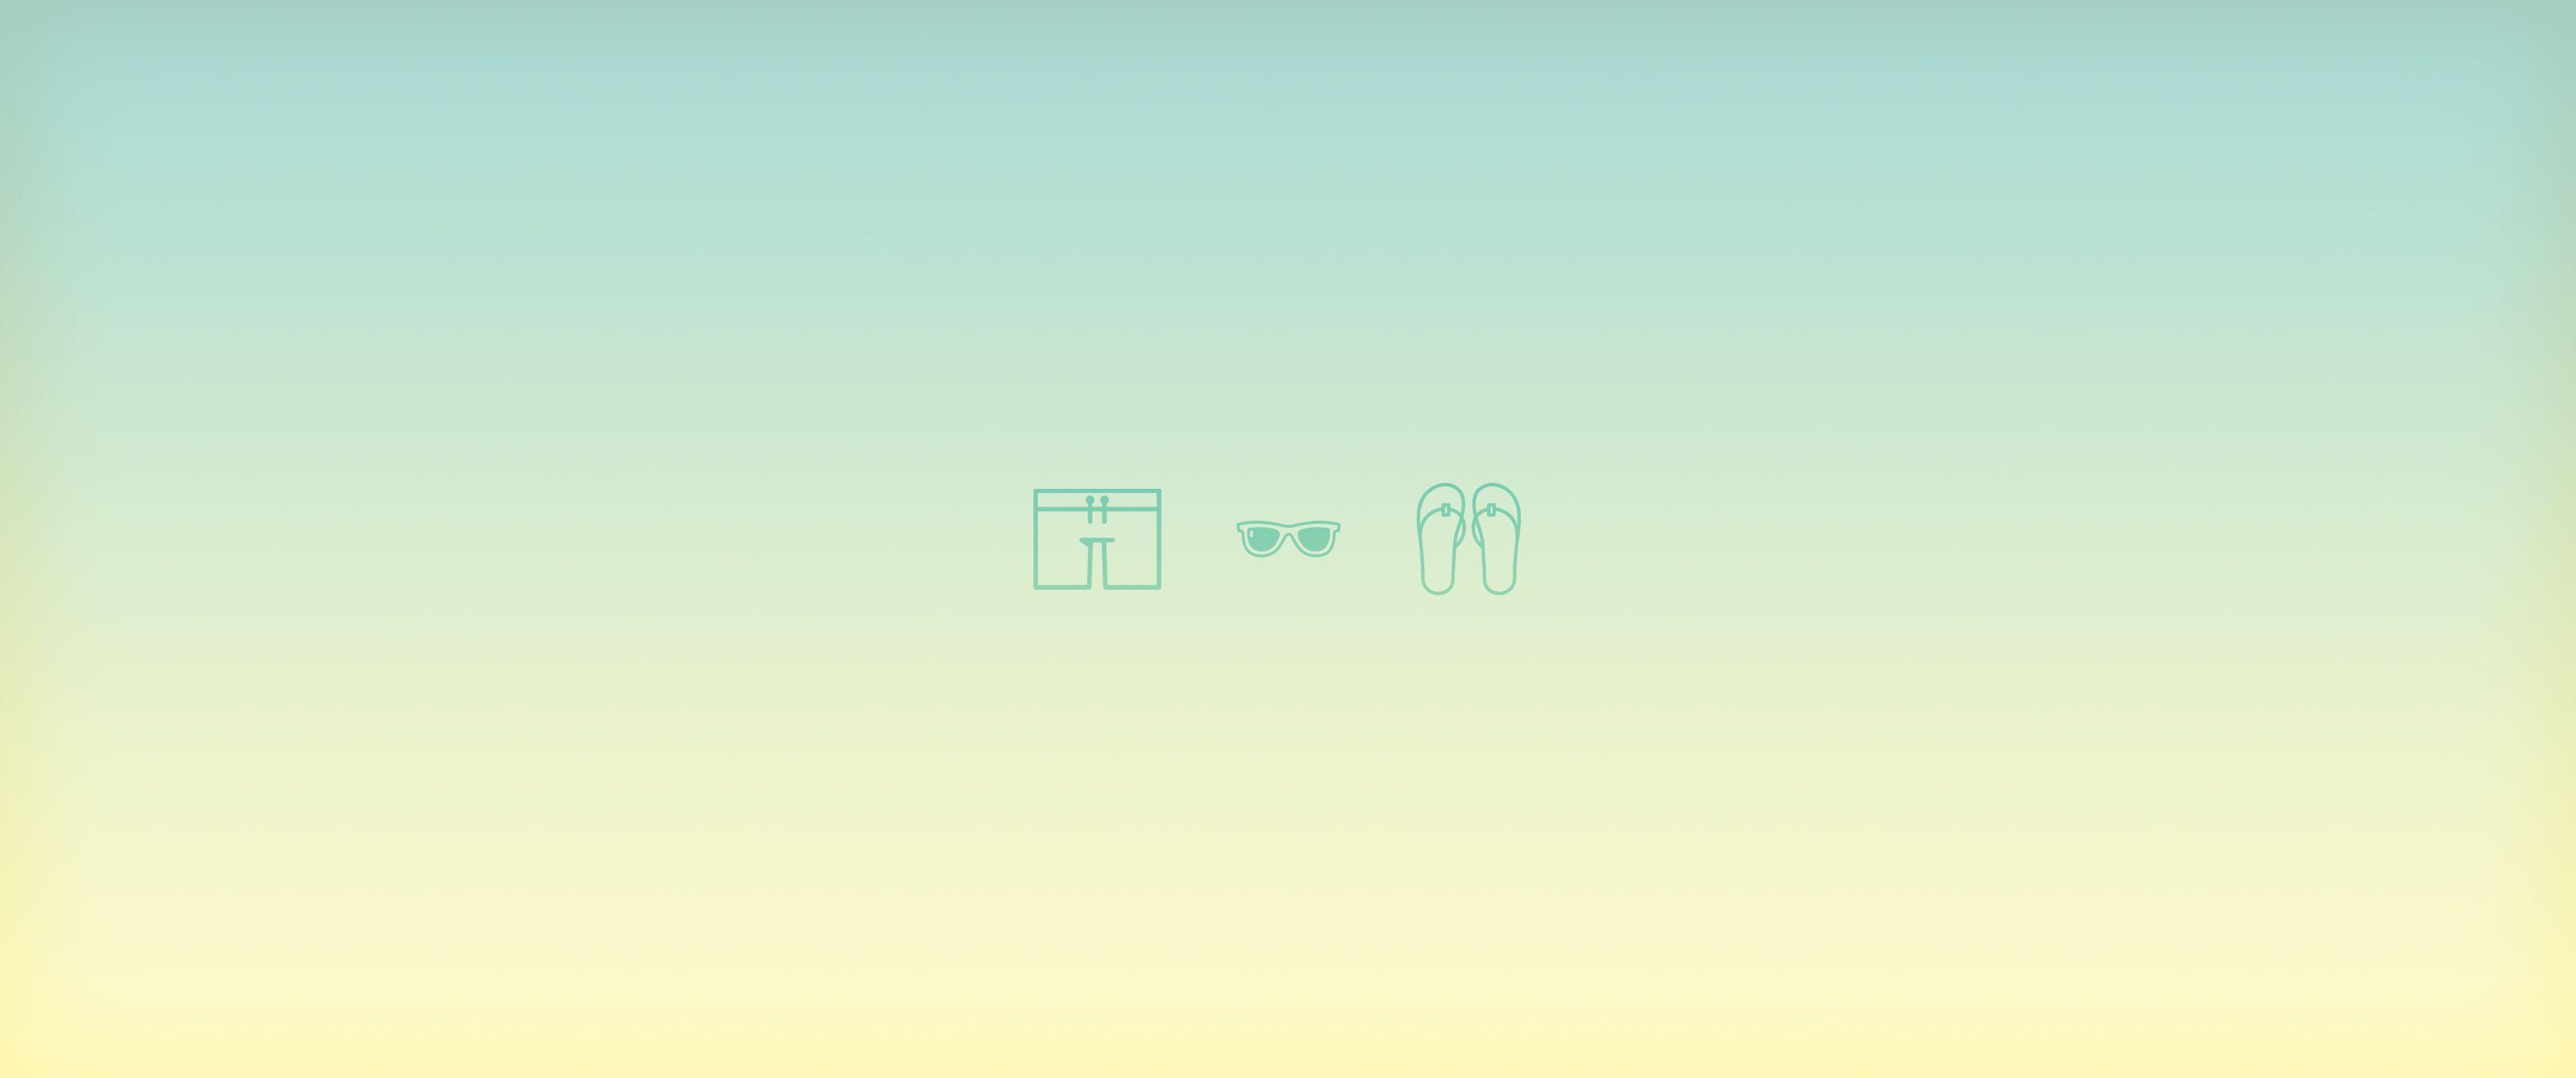 Tận hưởng cảm giác mùa hè với tấm hình nền Desktop tối giản. Những thiết kế này cực kỳ sống động và đẹp mắt, giúp bạn nhớ lại những kỷ niệm đẹp của mùa hè và thư giãn trong công việc.